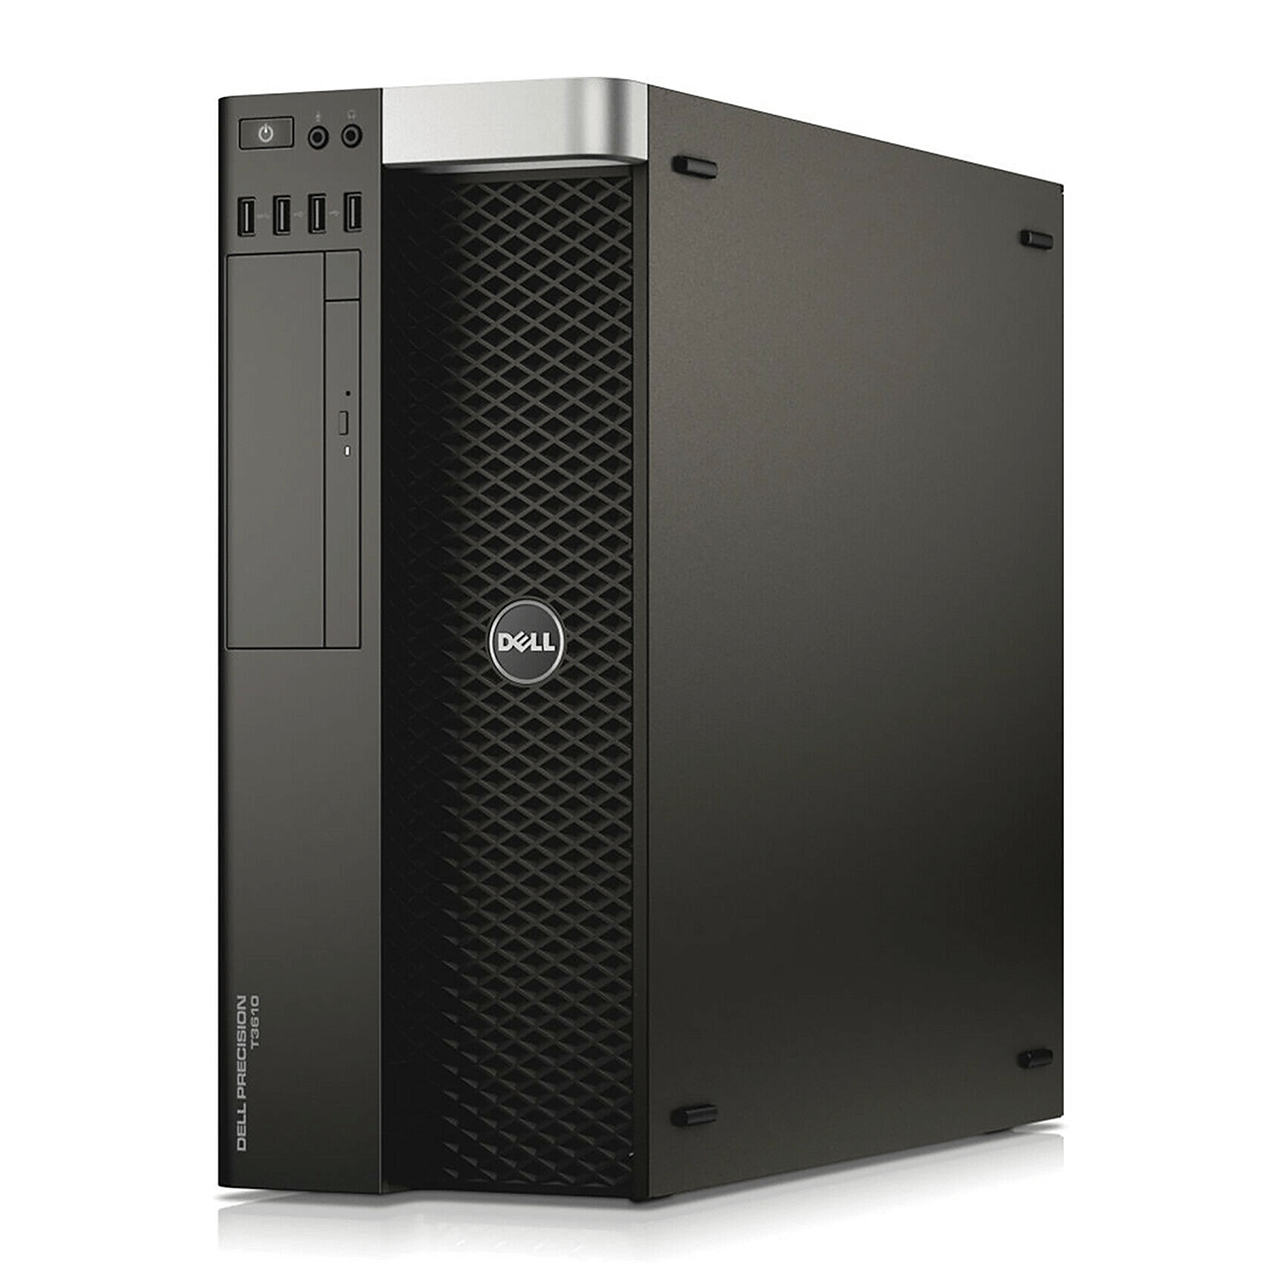 Dell Precision T3610 Tower - Intel Xeon E5-1607 v2 (3.00 GHz) 4C - 8GB DDR3  - none - NVIDIA Quadro K600 (1GB DDR3) - No OS - Refurbished